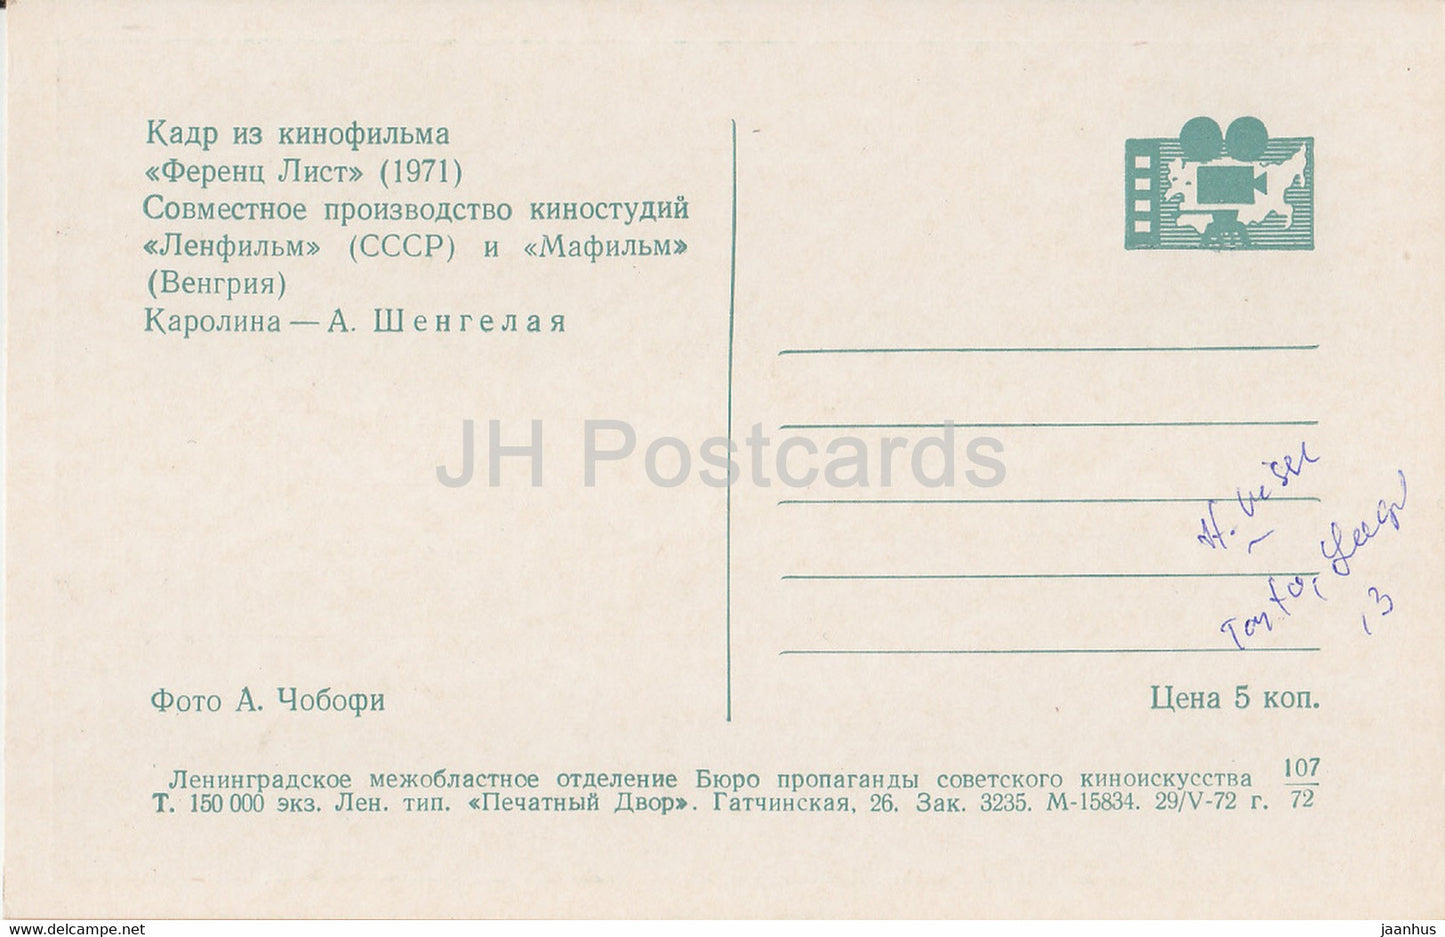 Franz Liszt - Schauspielerin A. Shengelaya - Film - Film - Sowjet - 1972 - Russland UdSSR - unbenutzt